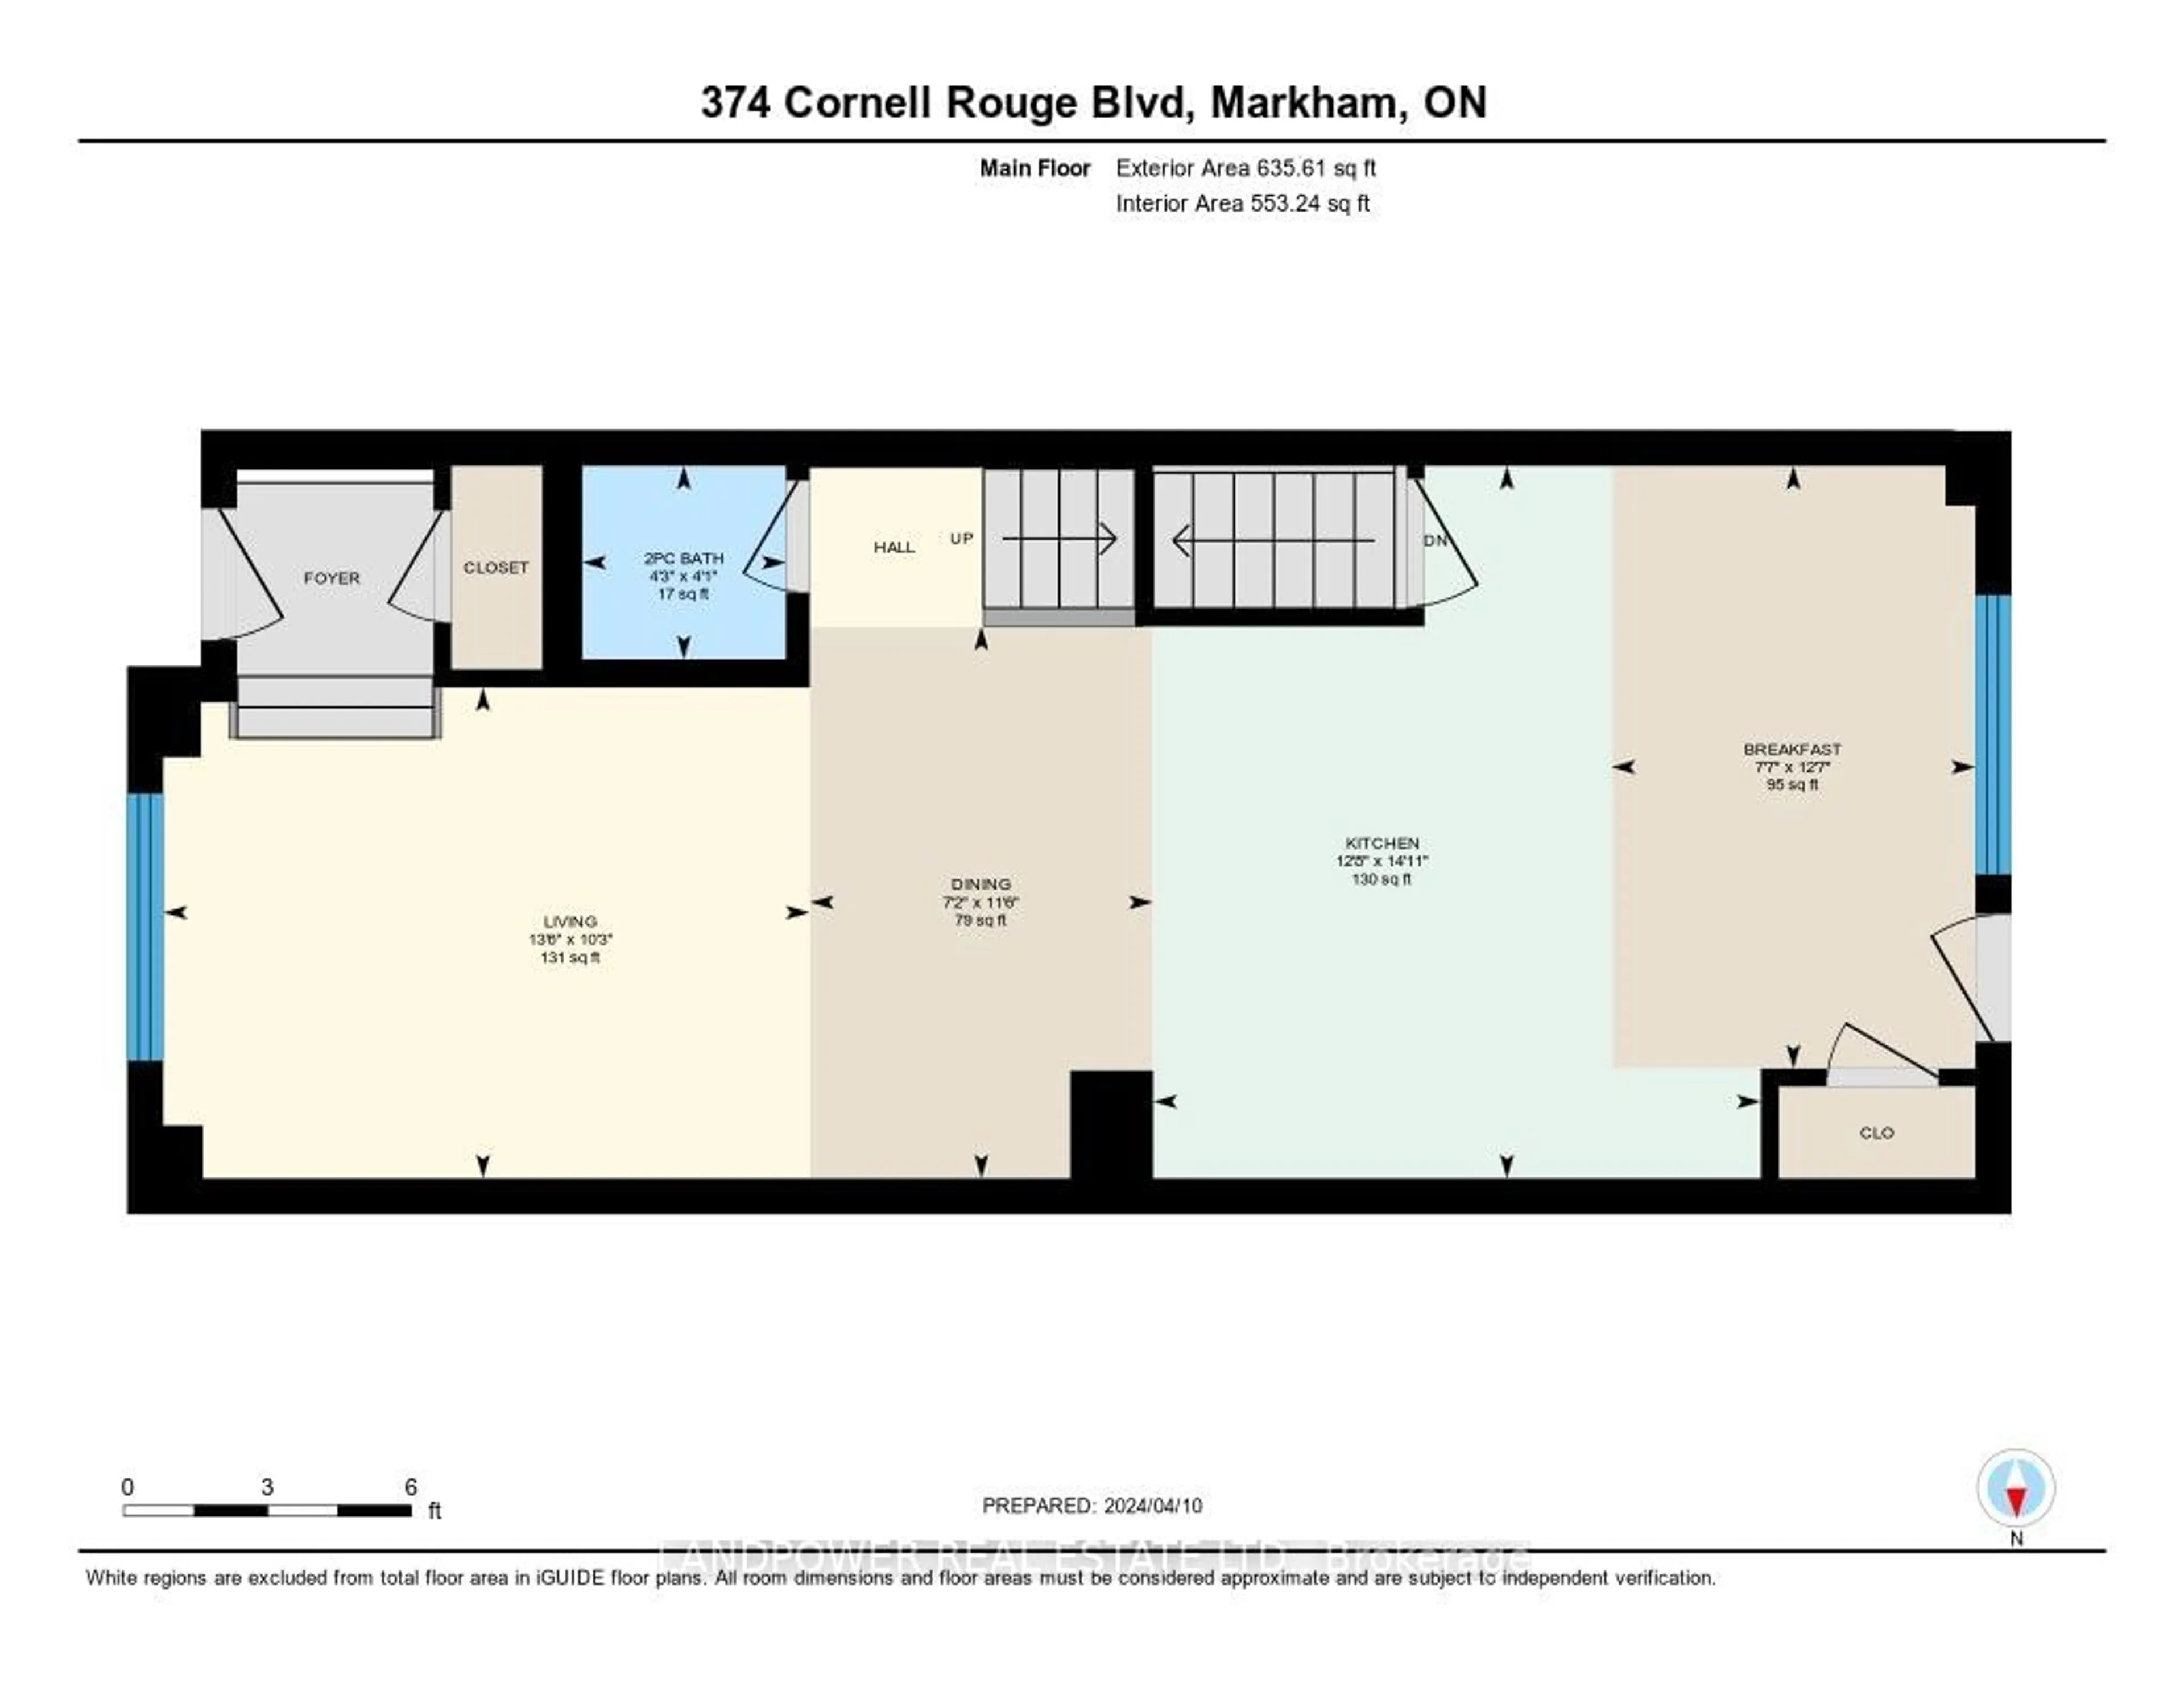 Floor plan for 374 Cornell Rouge Blvd, Markham Ontario L6B 0V1